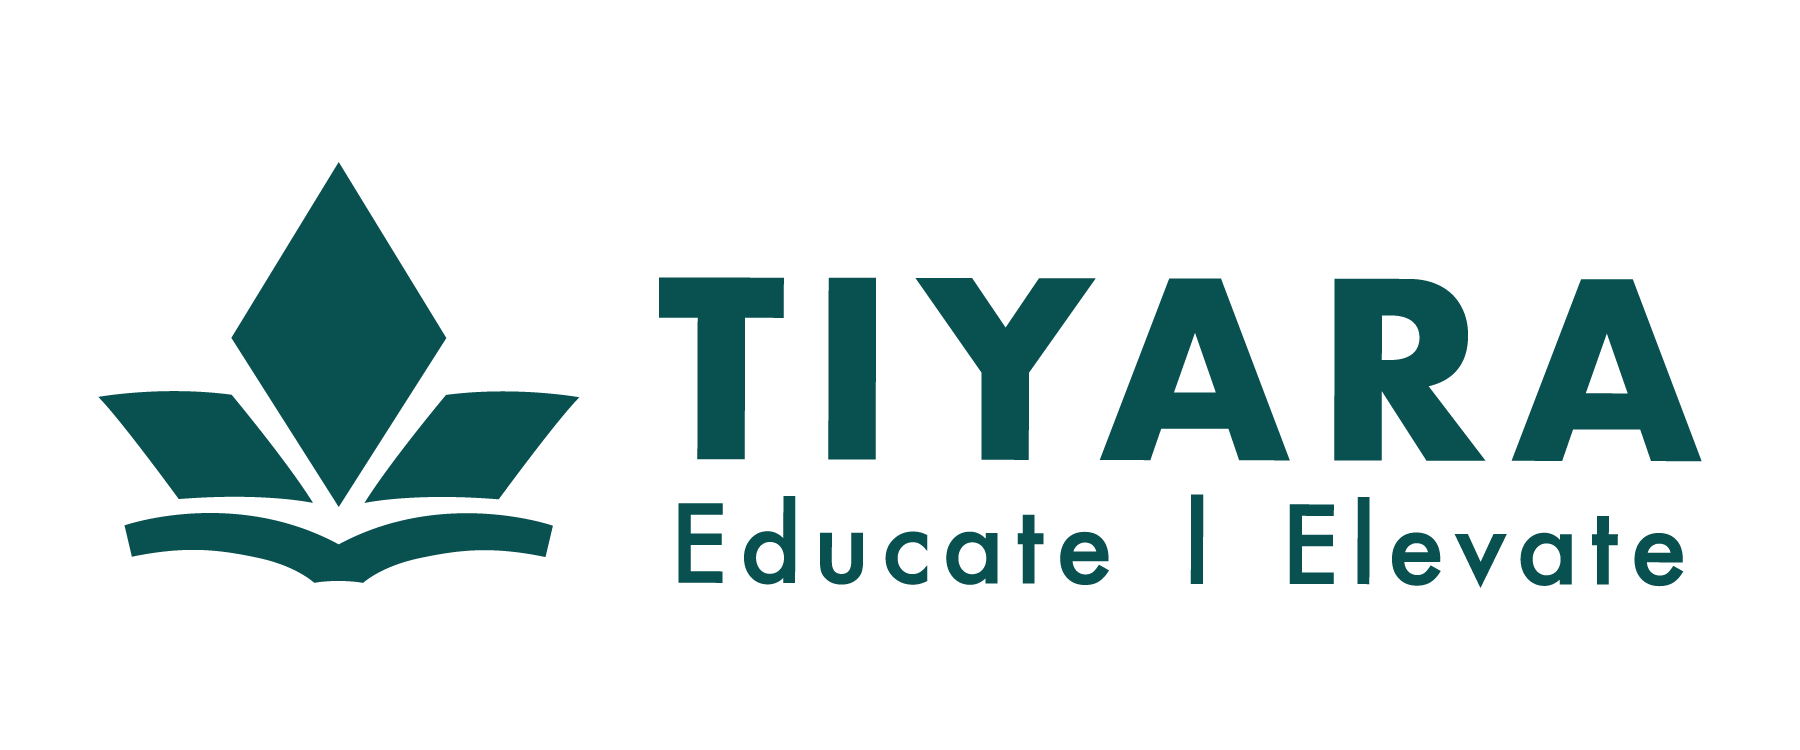 Tiyara, Inc logo